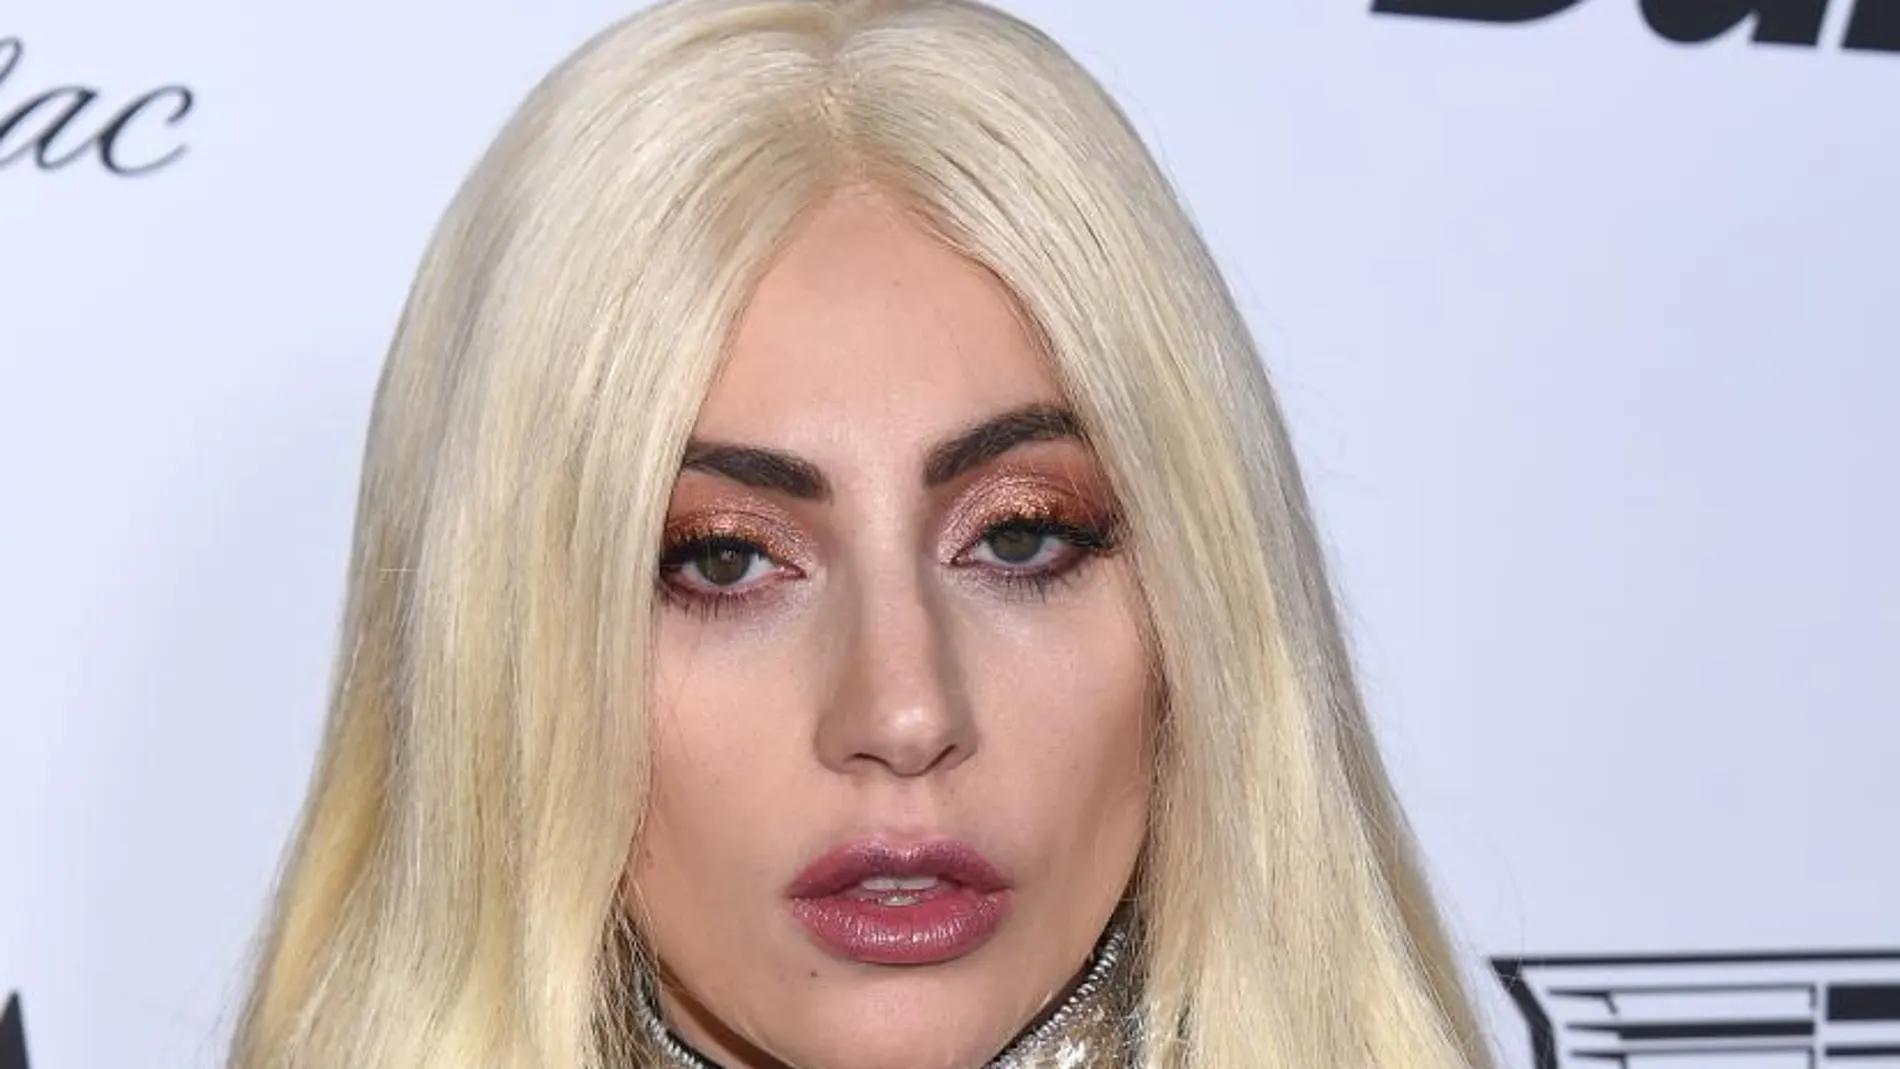 Lady Gaga, en la cumbre del espectáculo, cumple 30 años